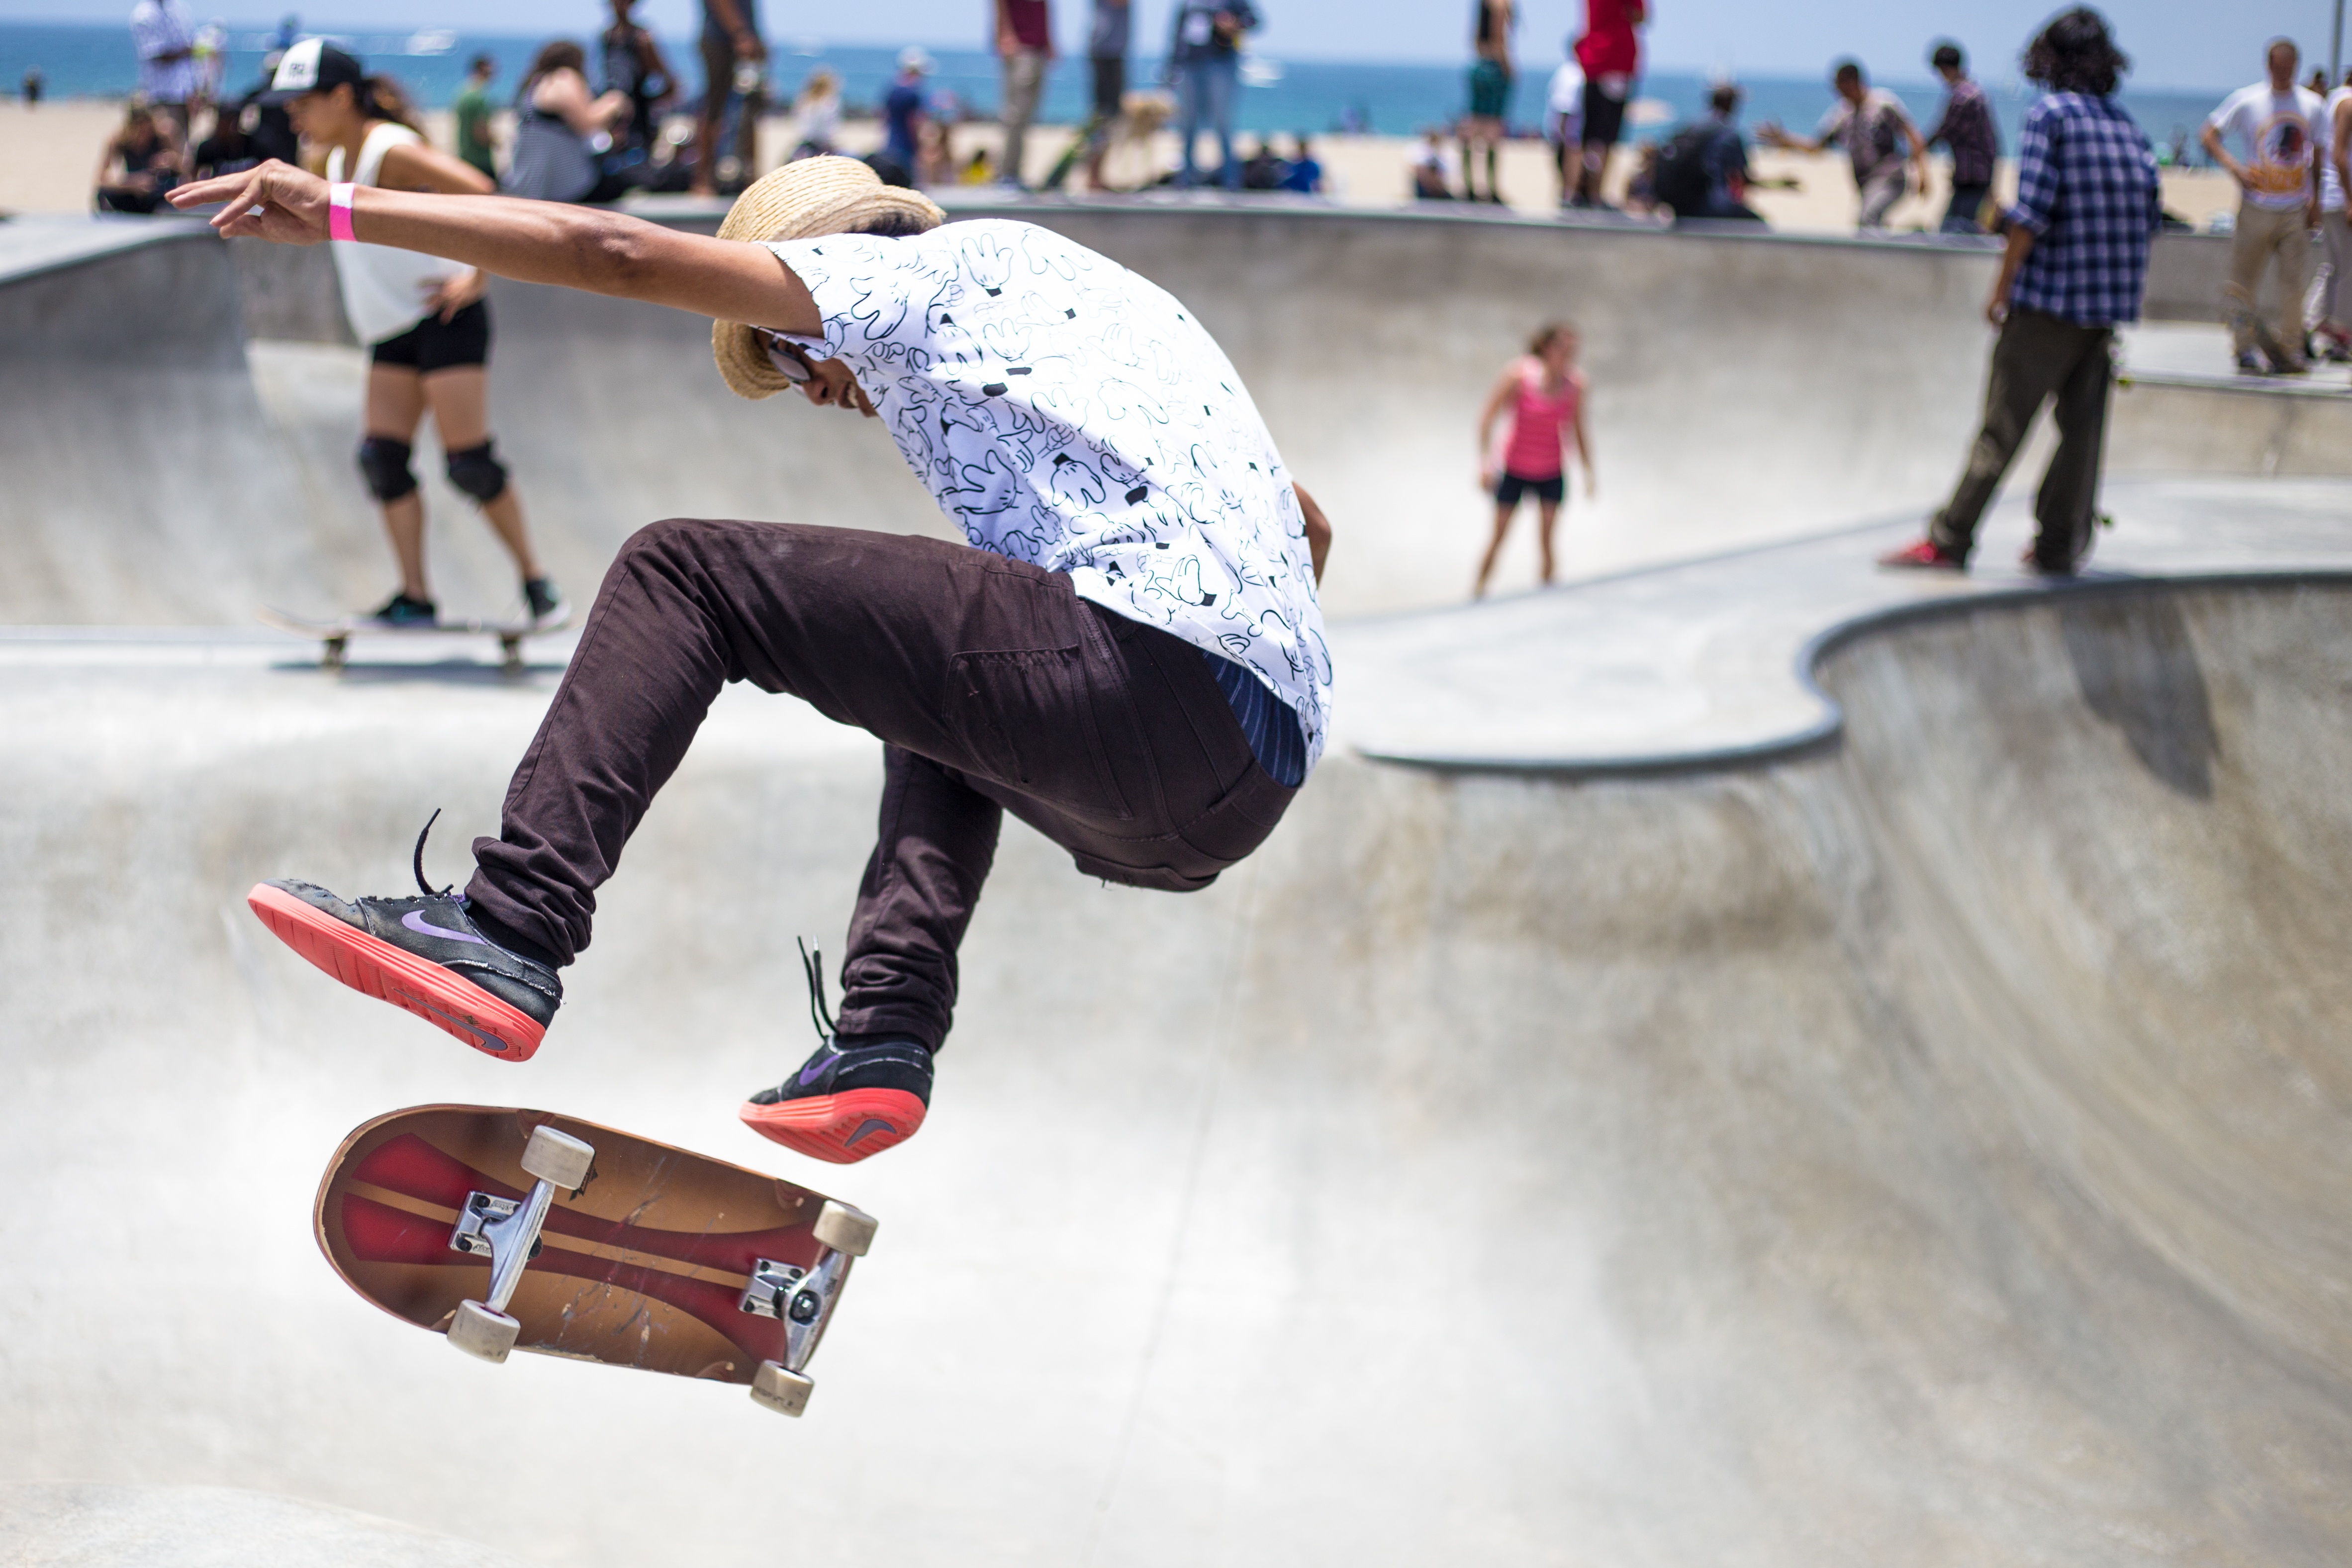 skateboarding, sports, outdoor, people, skateboard, urban